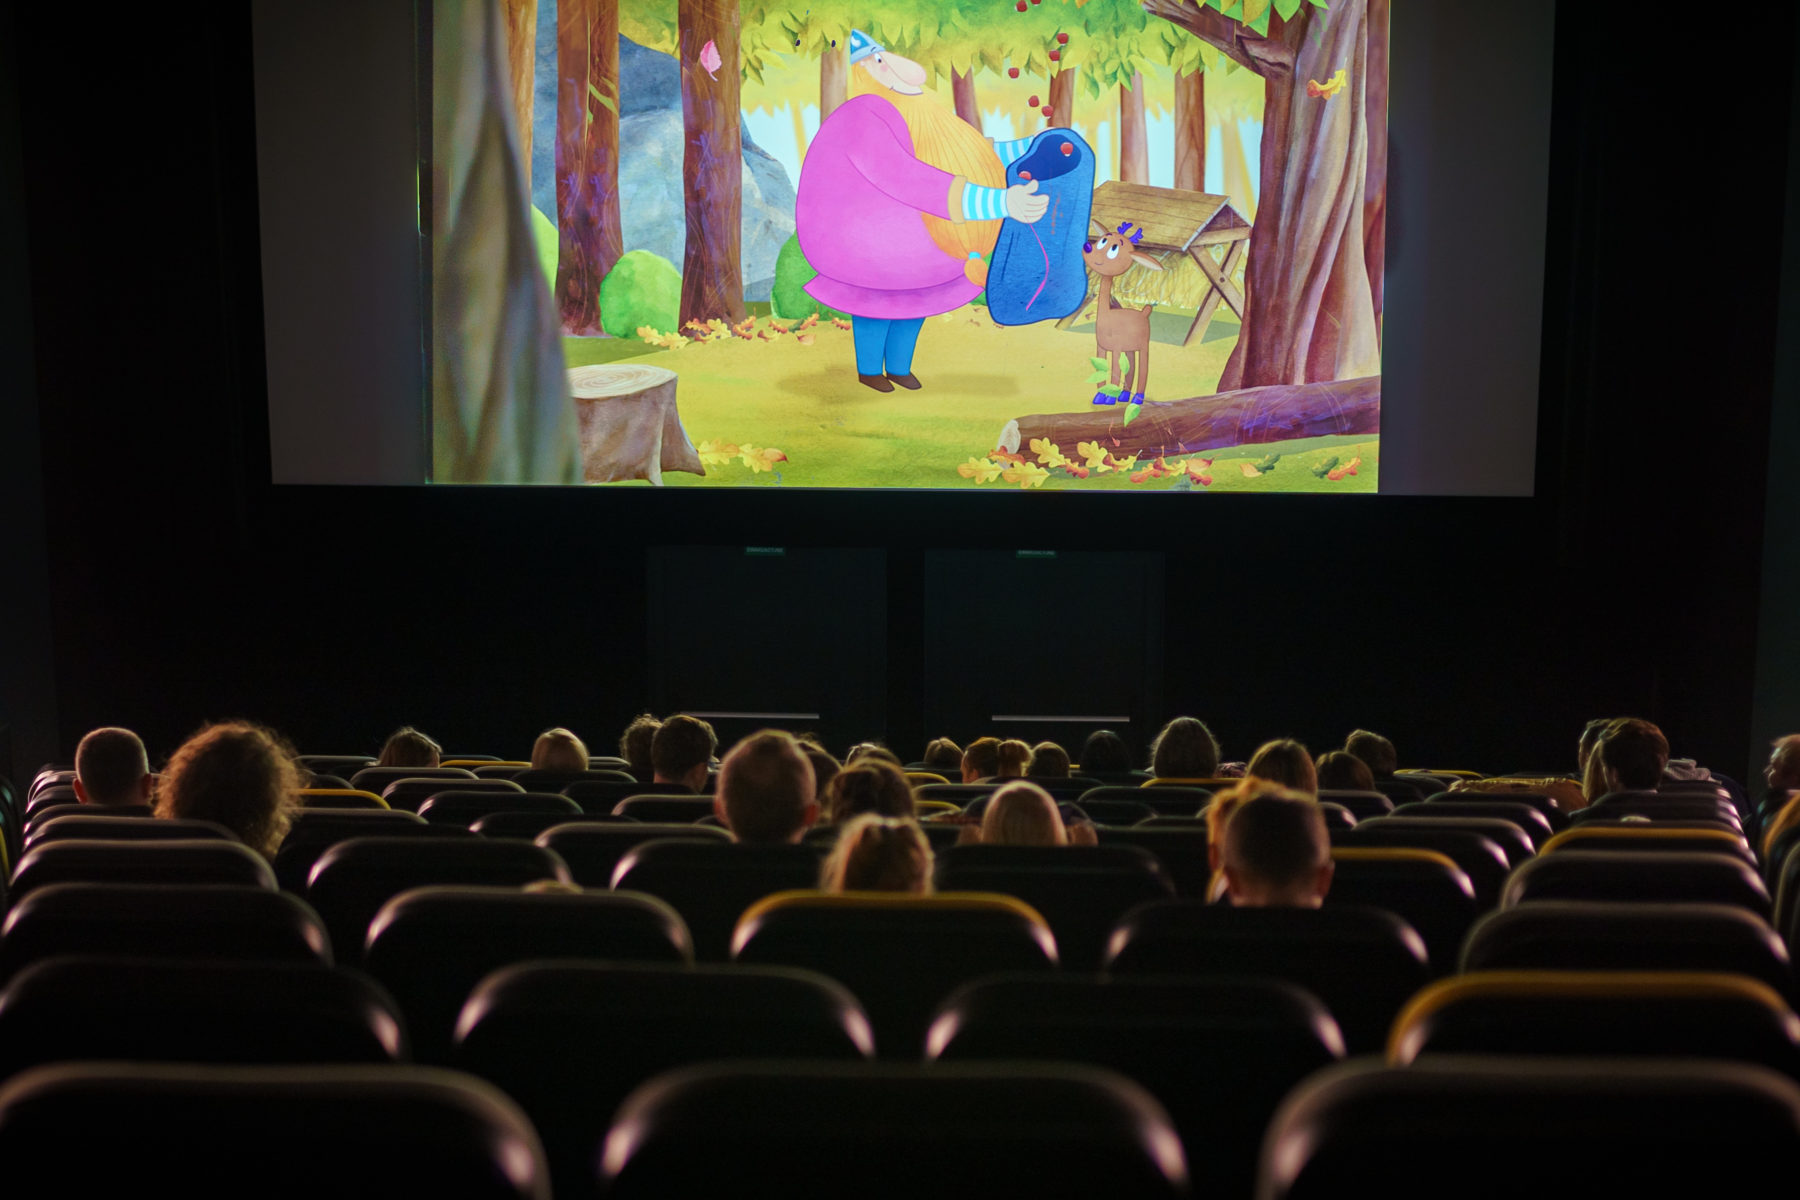 Kinowa sala, widok na ekran z kadrem bajki dla najmłodszych widzów.